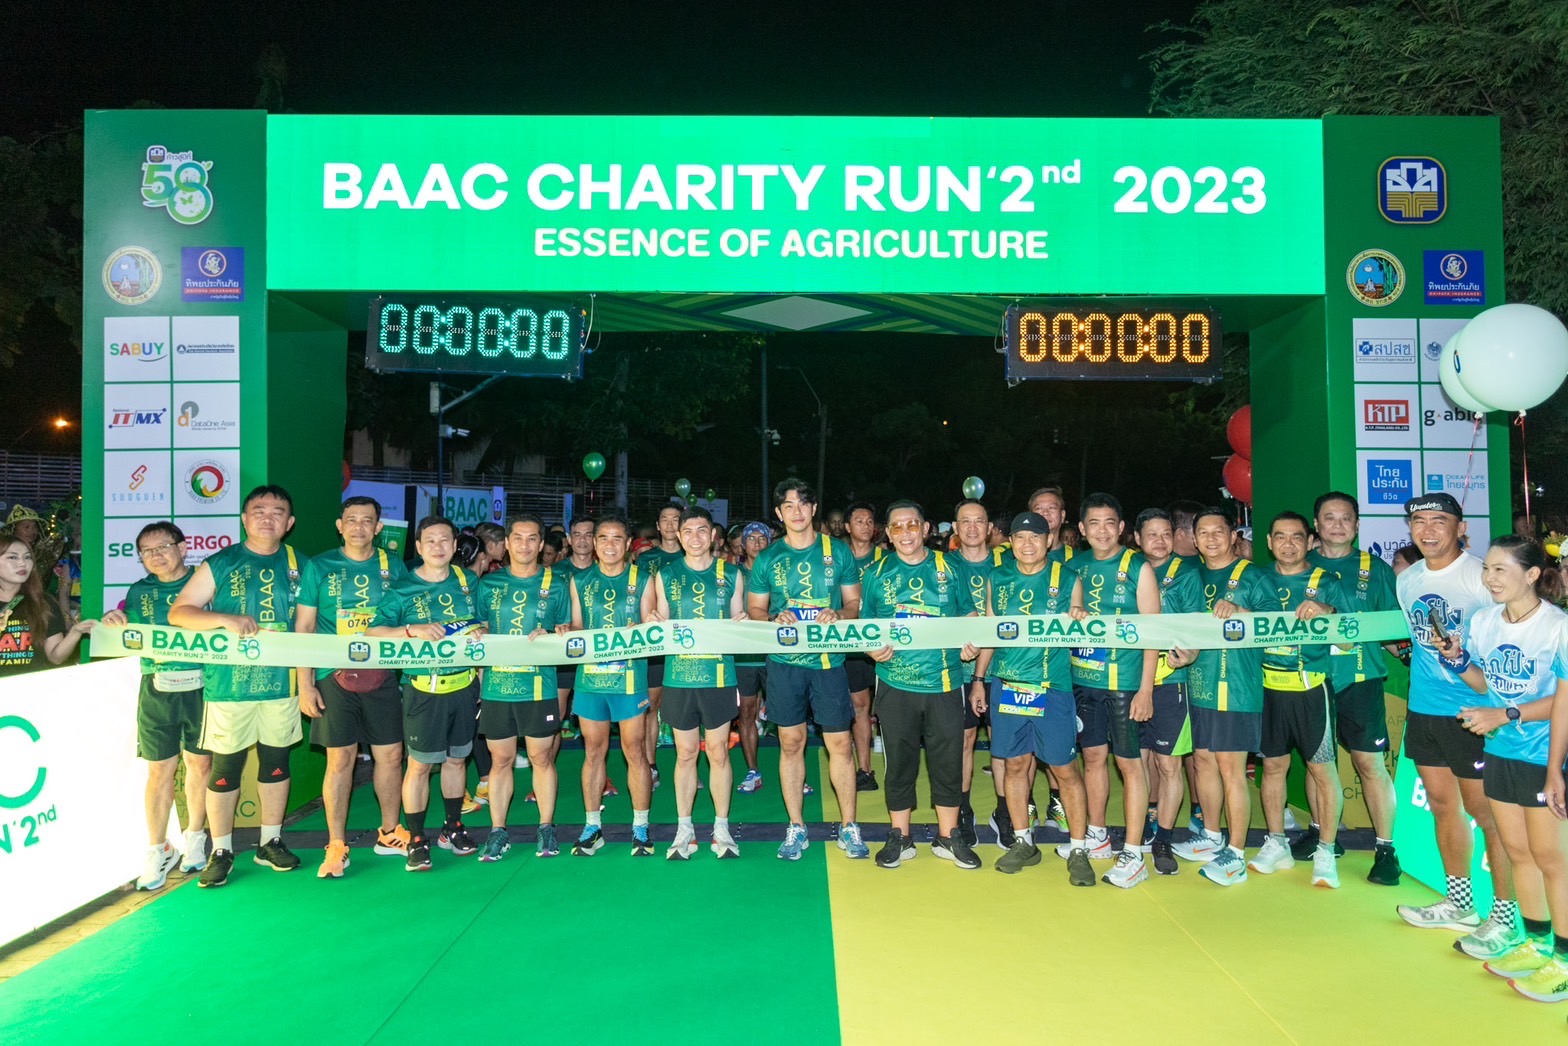 ธ.ก.ส. ก้าวสู่ปีที่ 58 จัด BAAC Charity Run 2nd 2023 มีผู้เข้าร่วมกว่า 4,000 คน